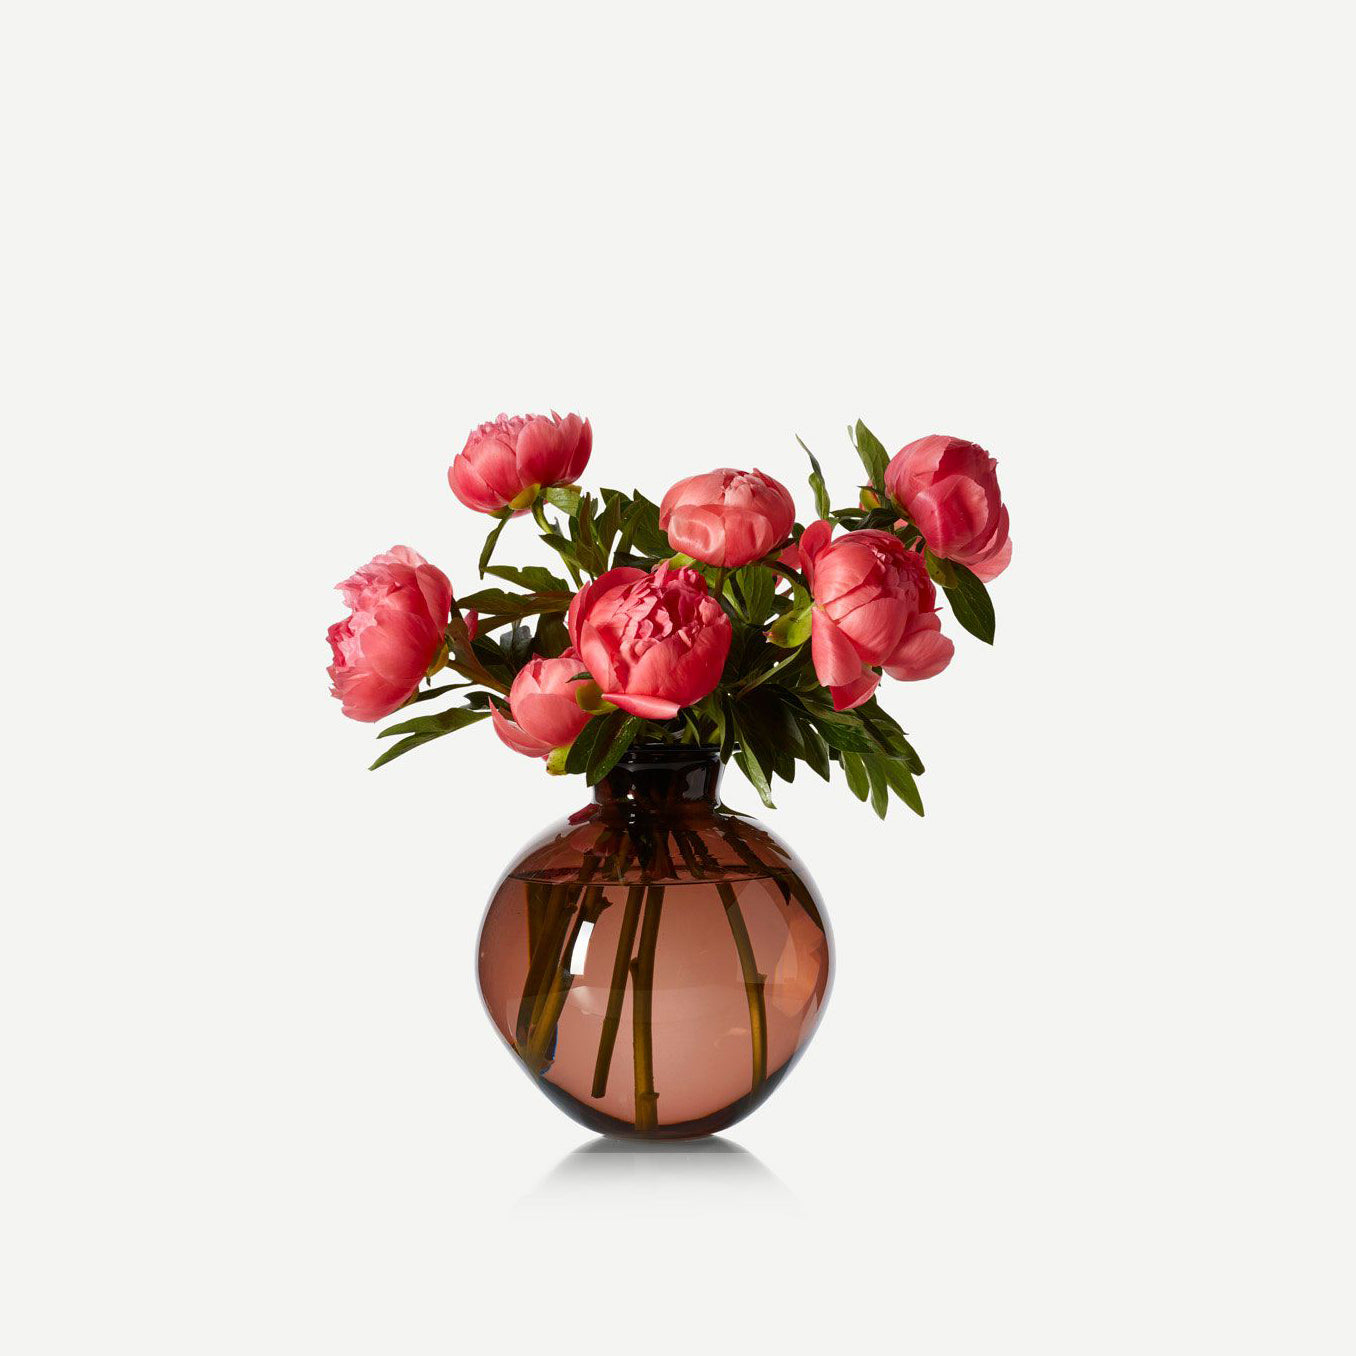 flowers in hand-handblown glass vase